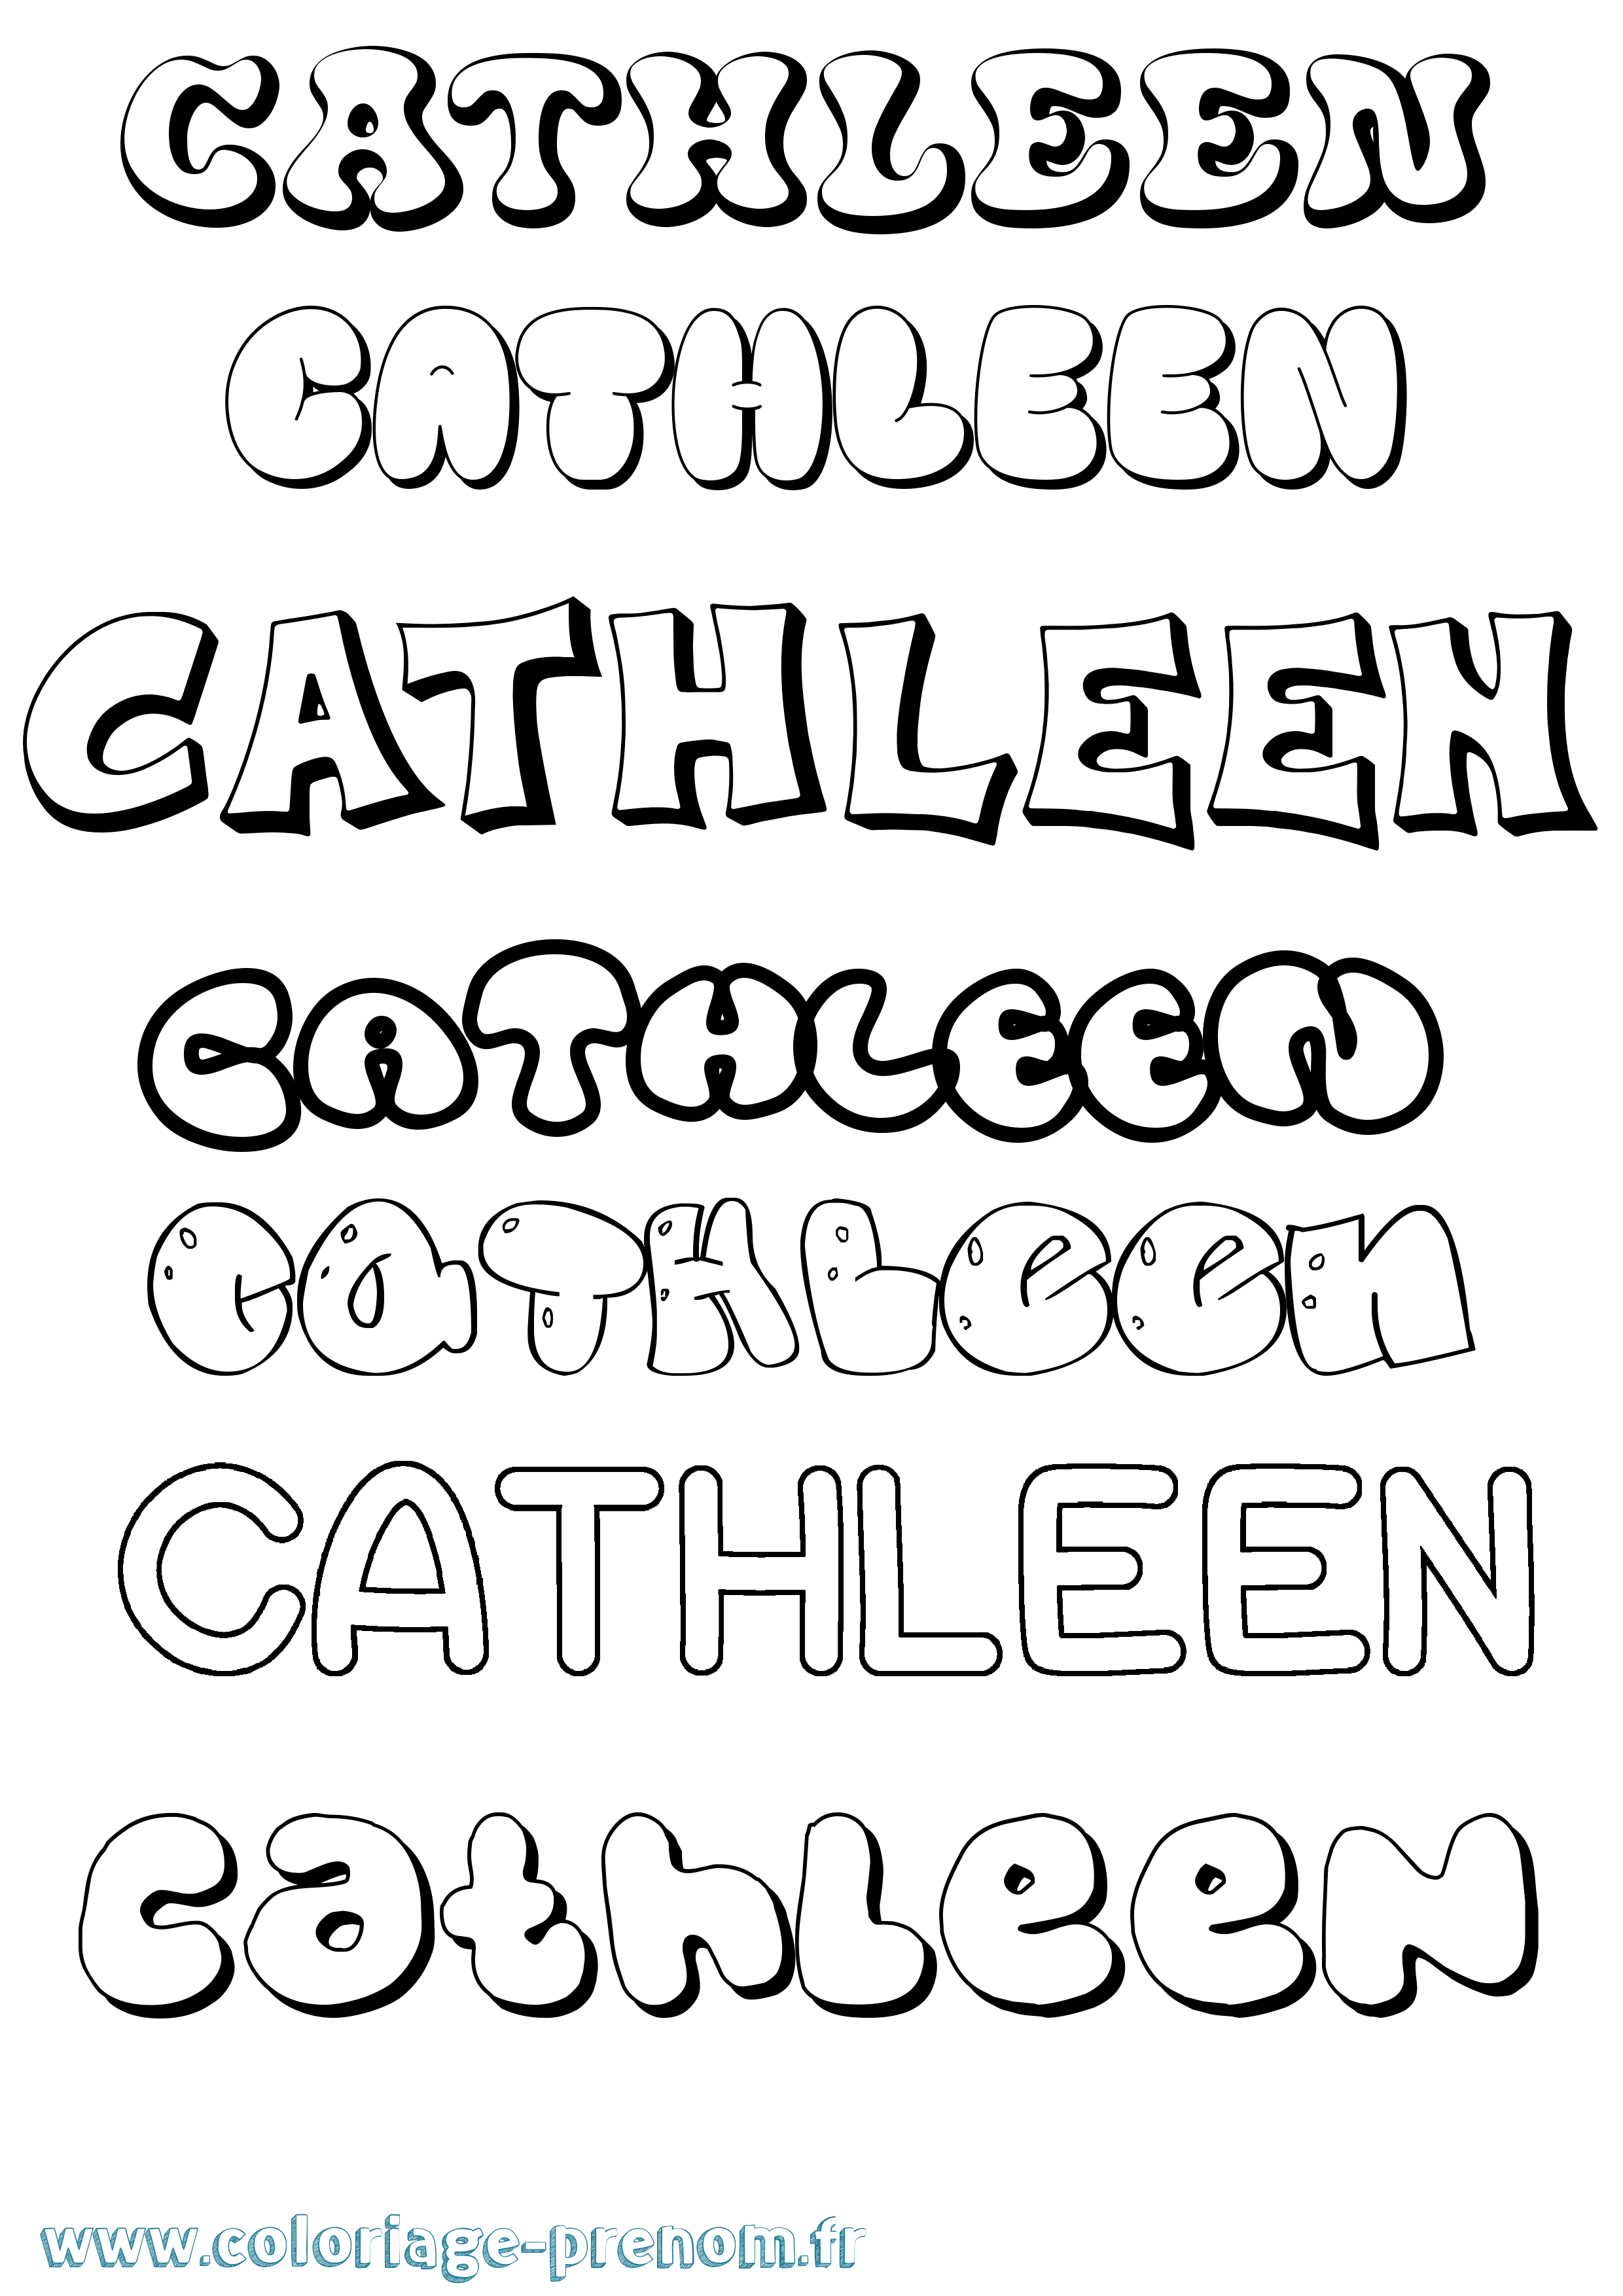 Coloriage prénom Cathleen Bubble